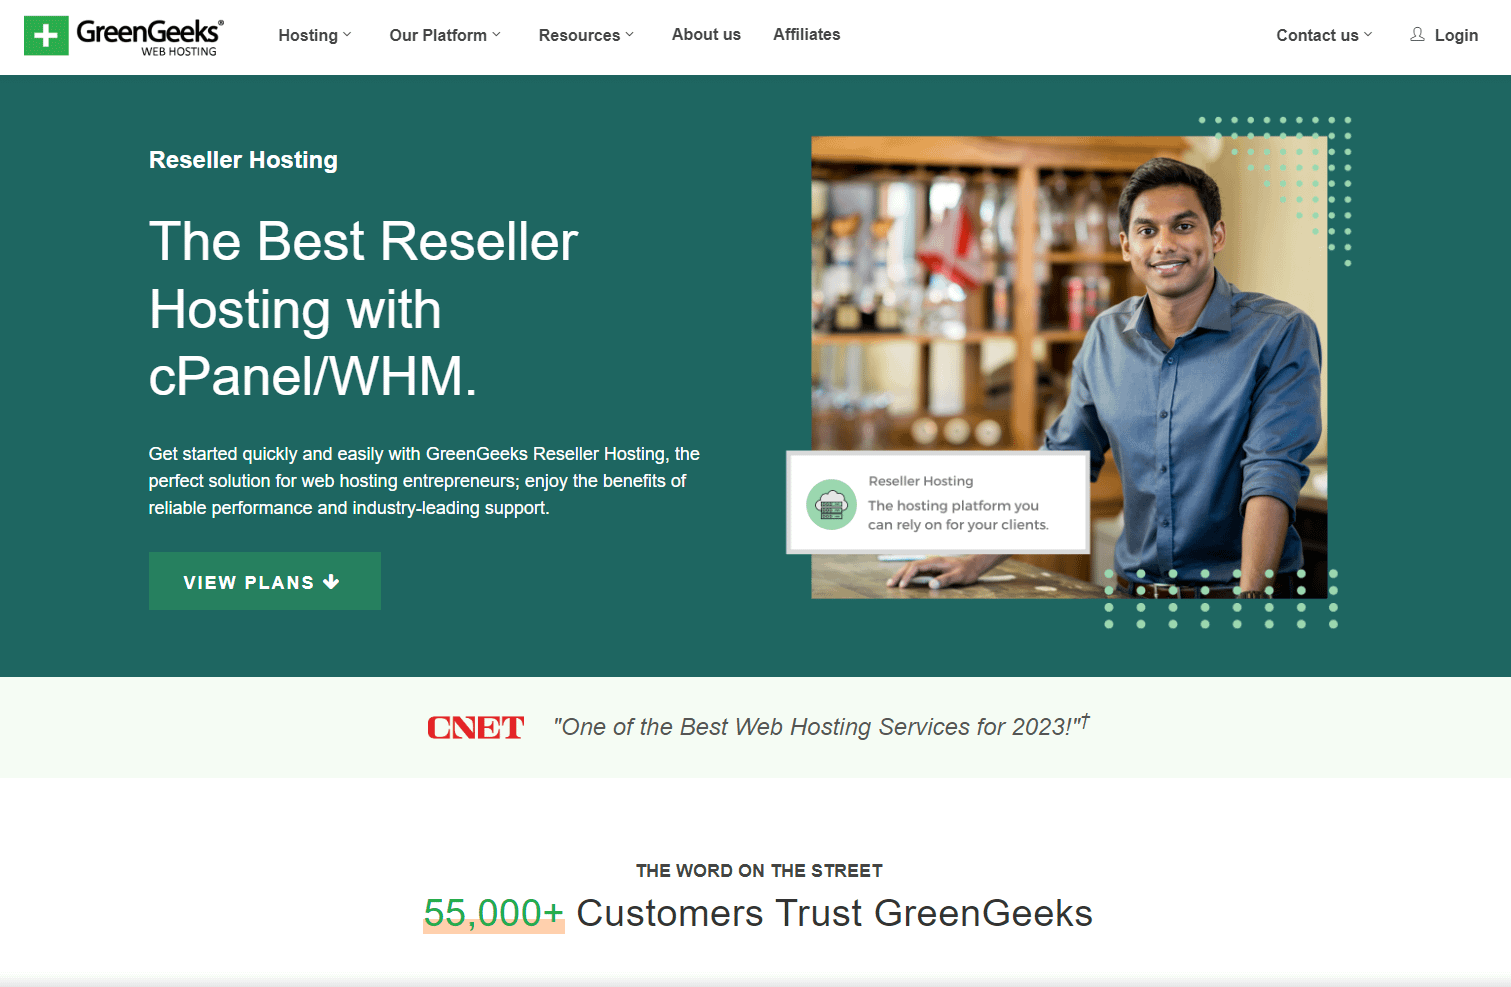 Green Geeks' reseller hosting page.